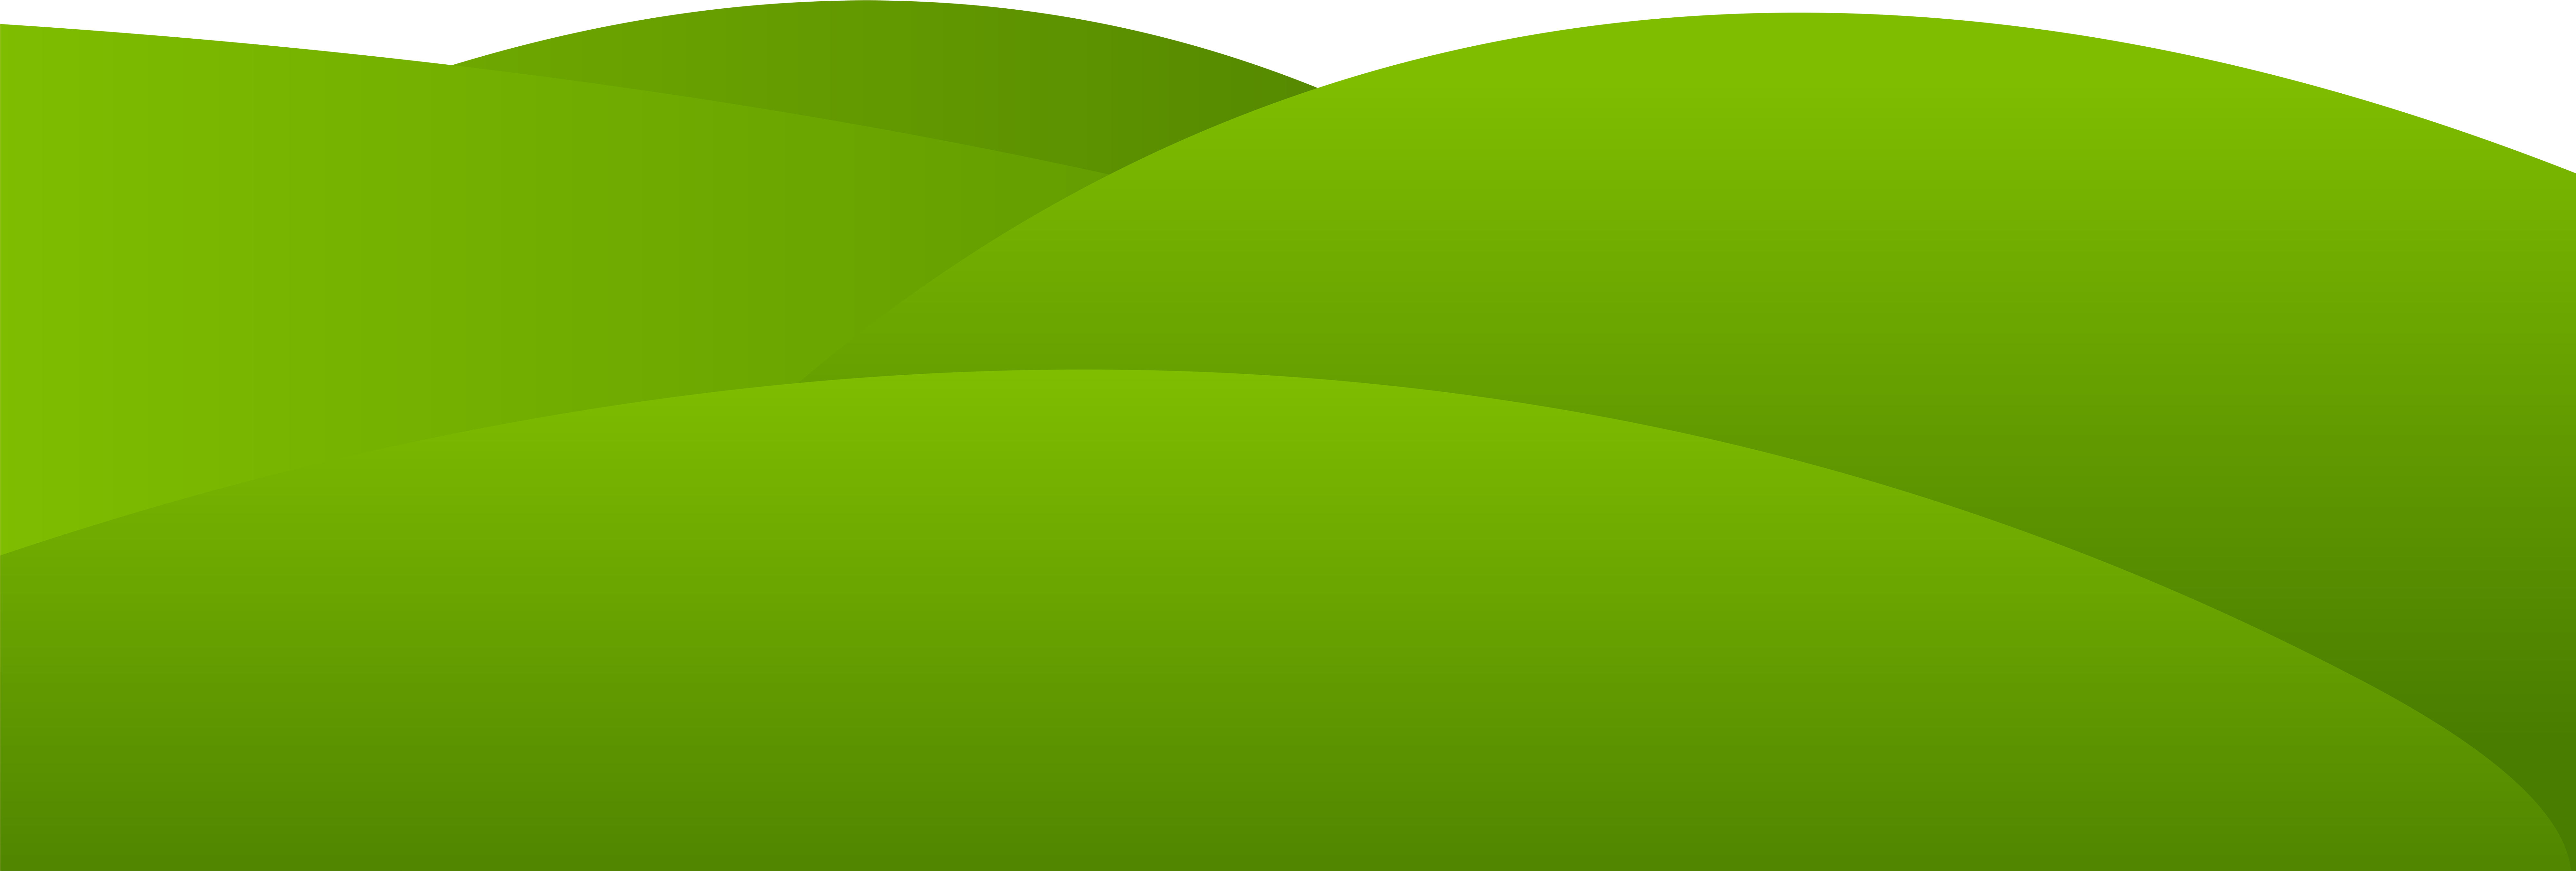 Луговый зеленый план прозрачный фон